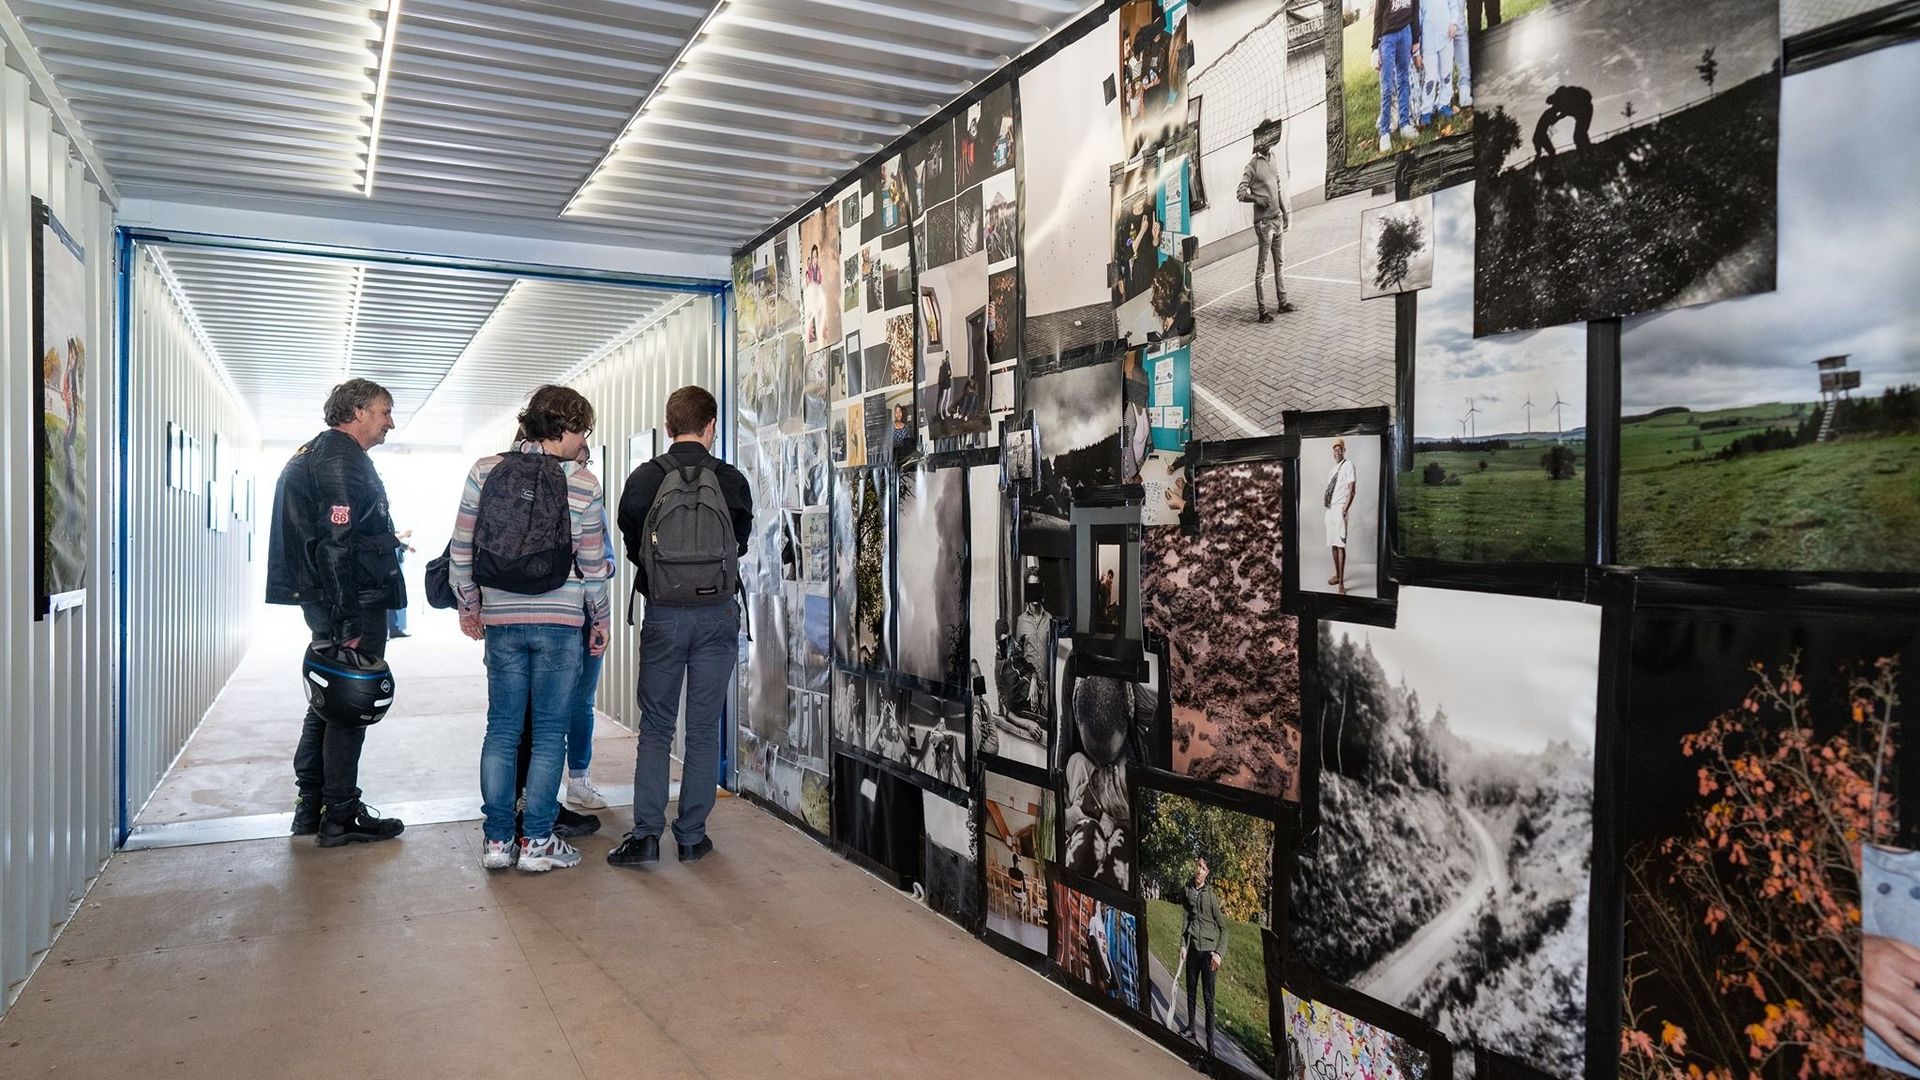 Plus de 100 photographes de renom affichent leur travail dans 15.000 m2 d’exposition.